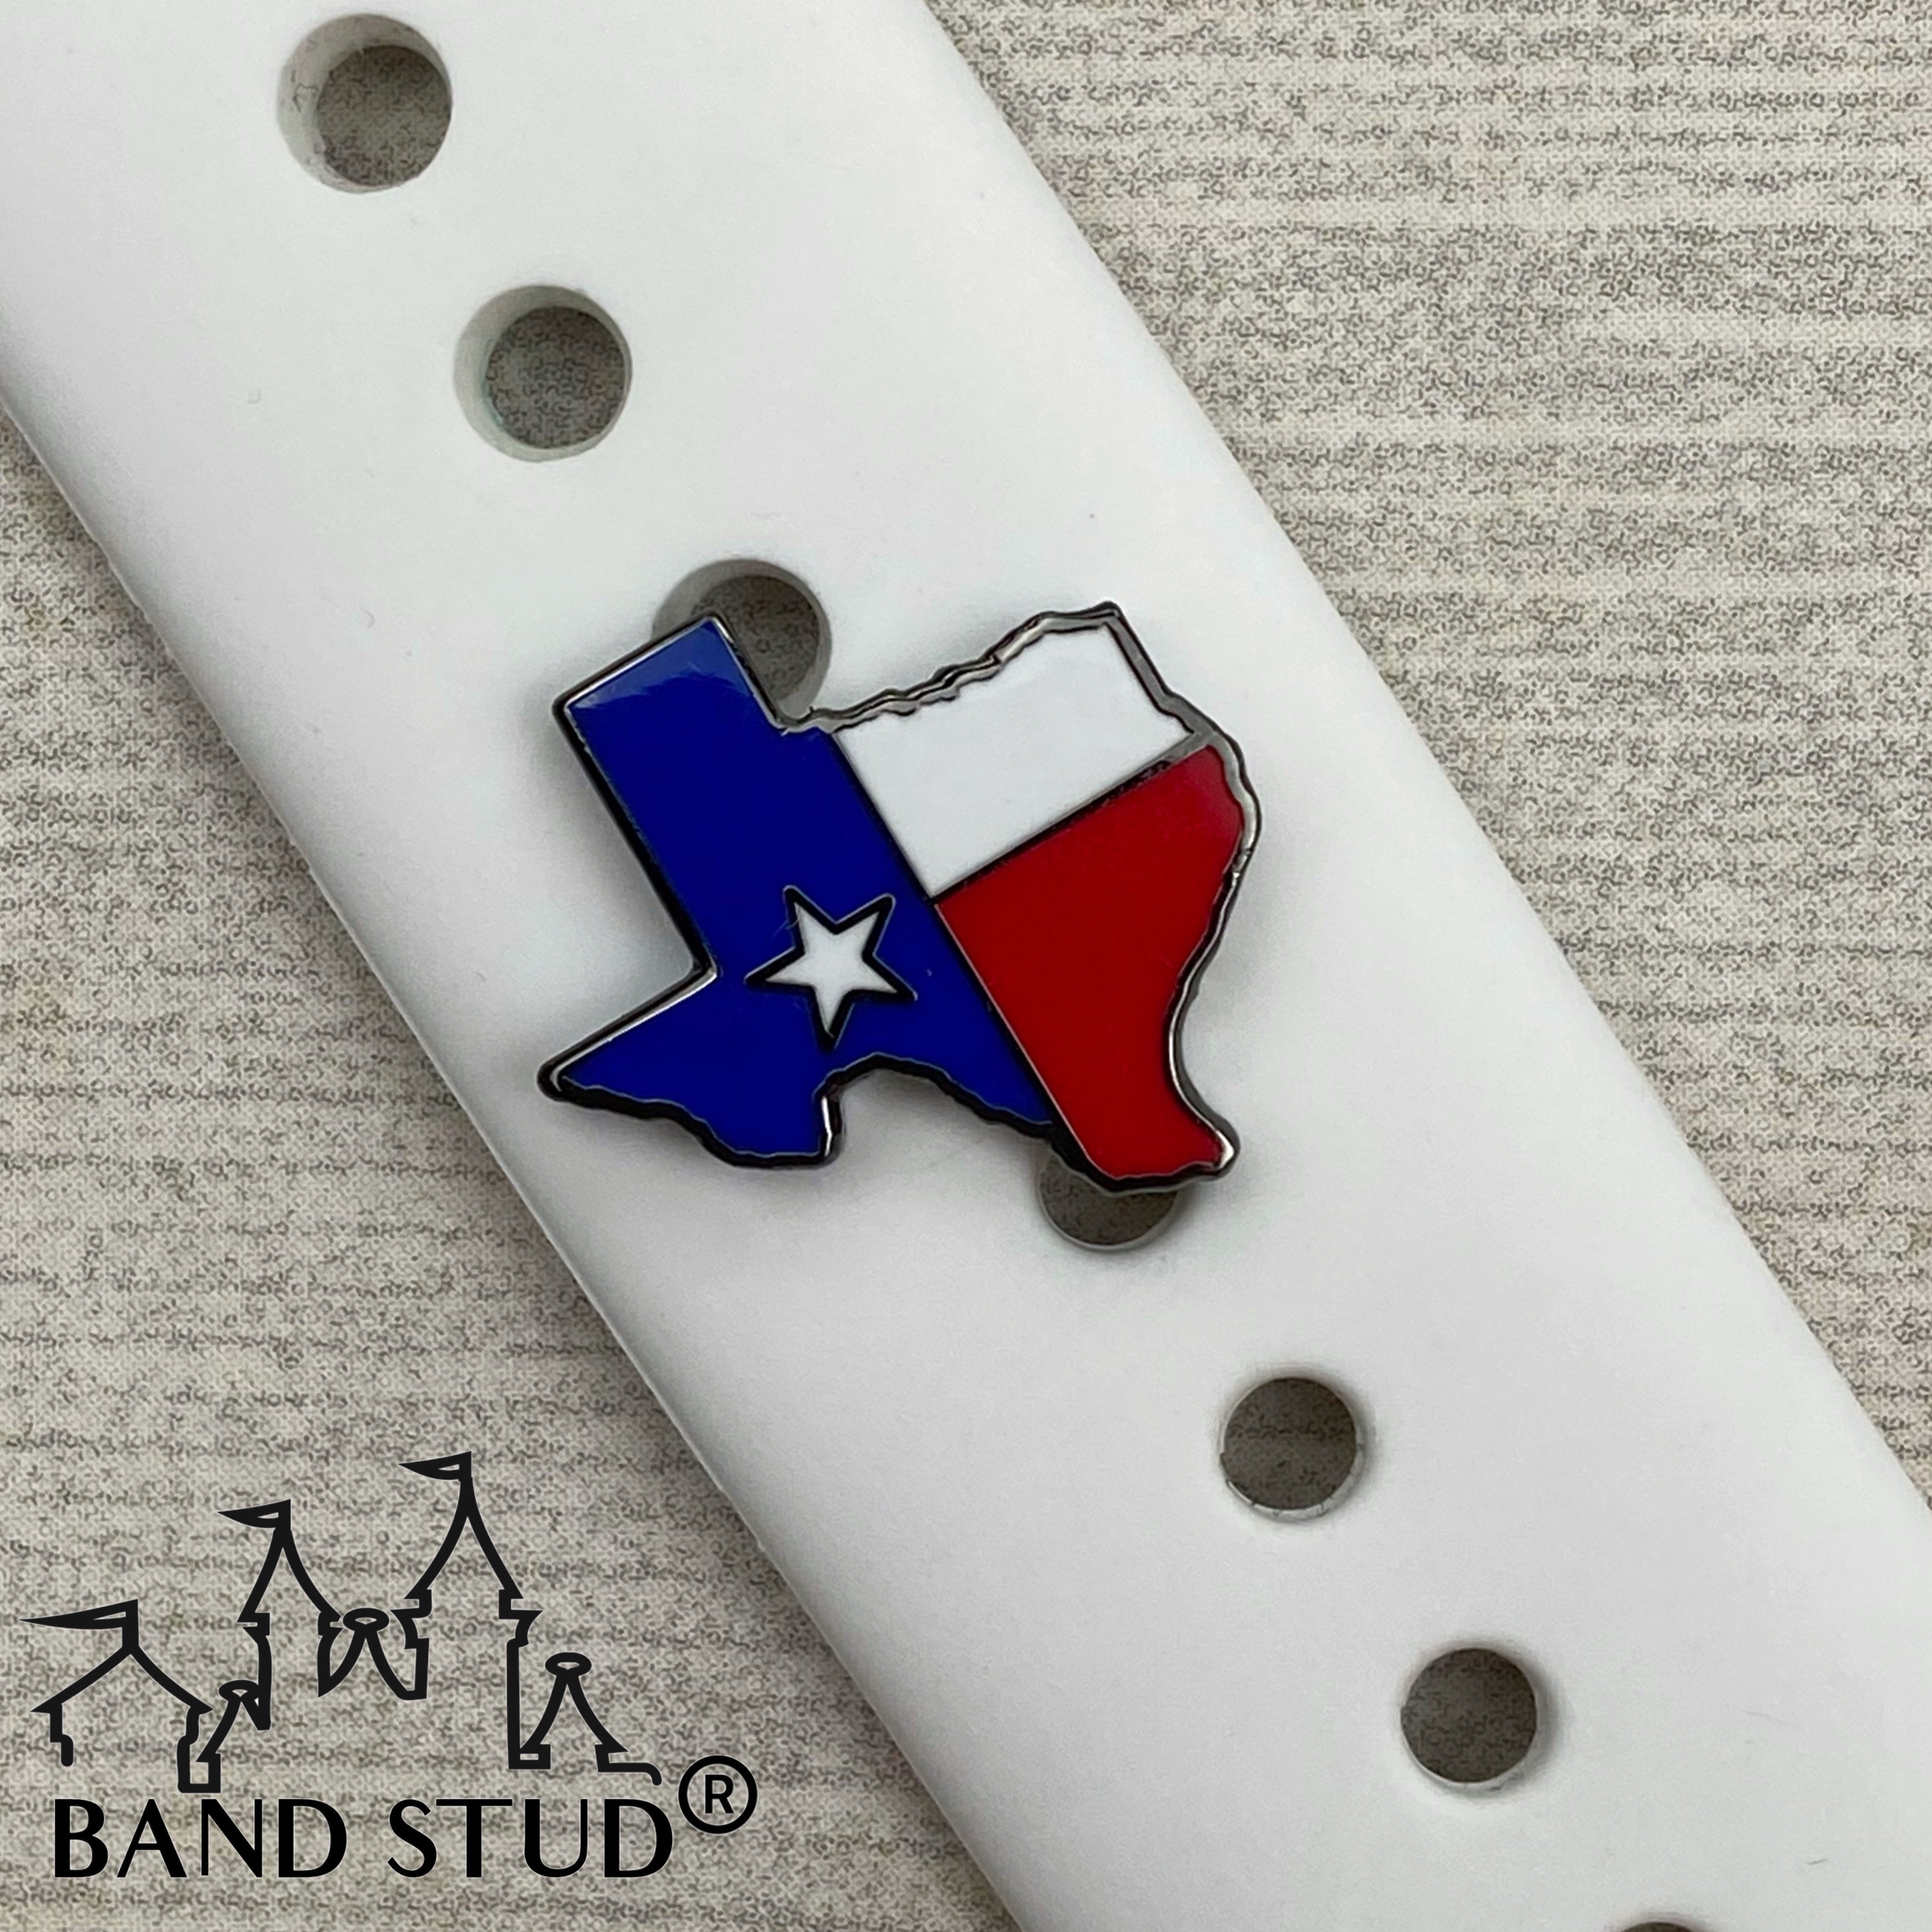 Band Stud® - Texas